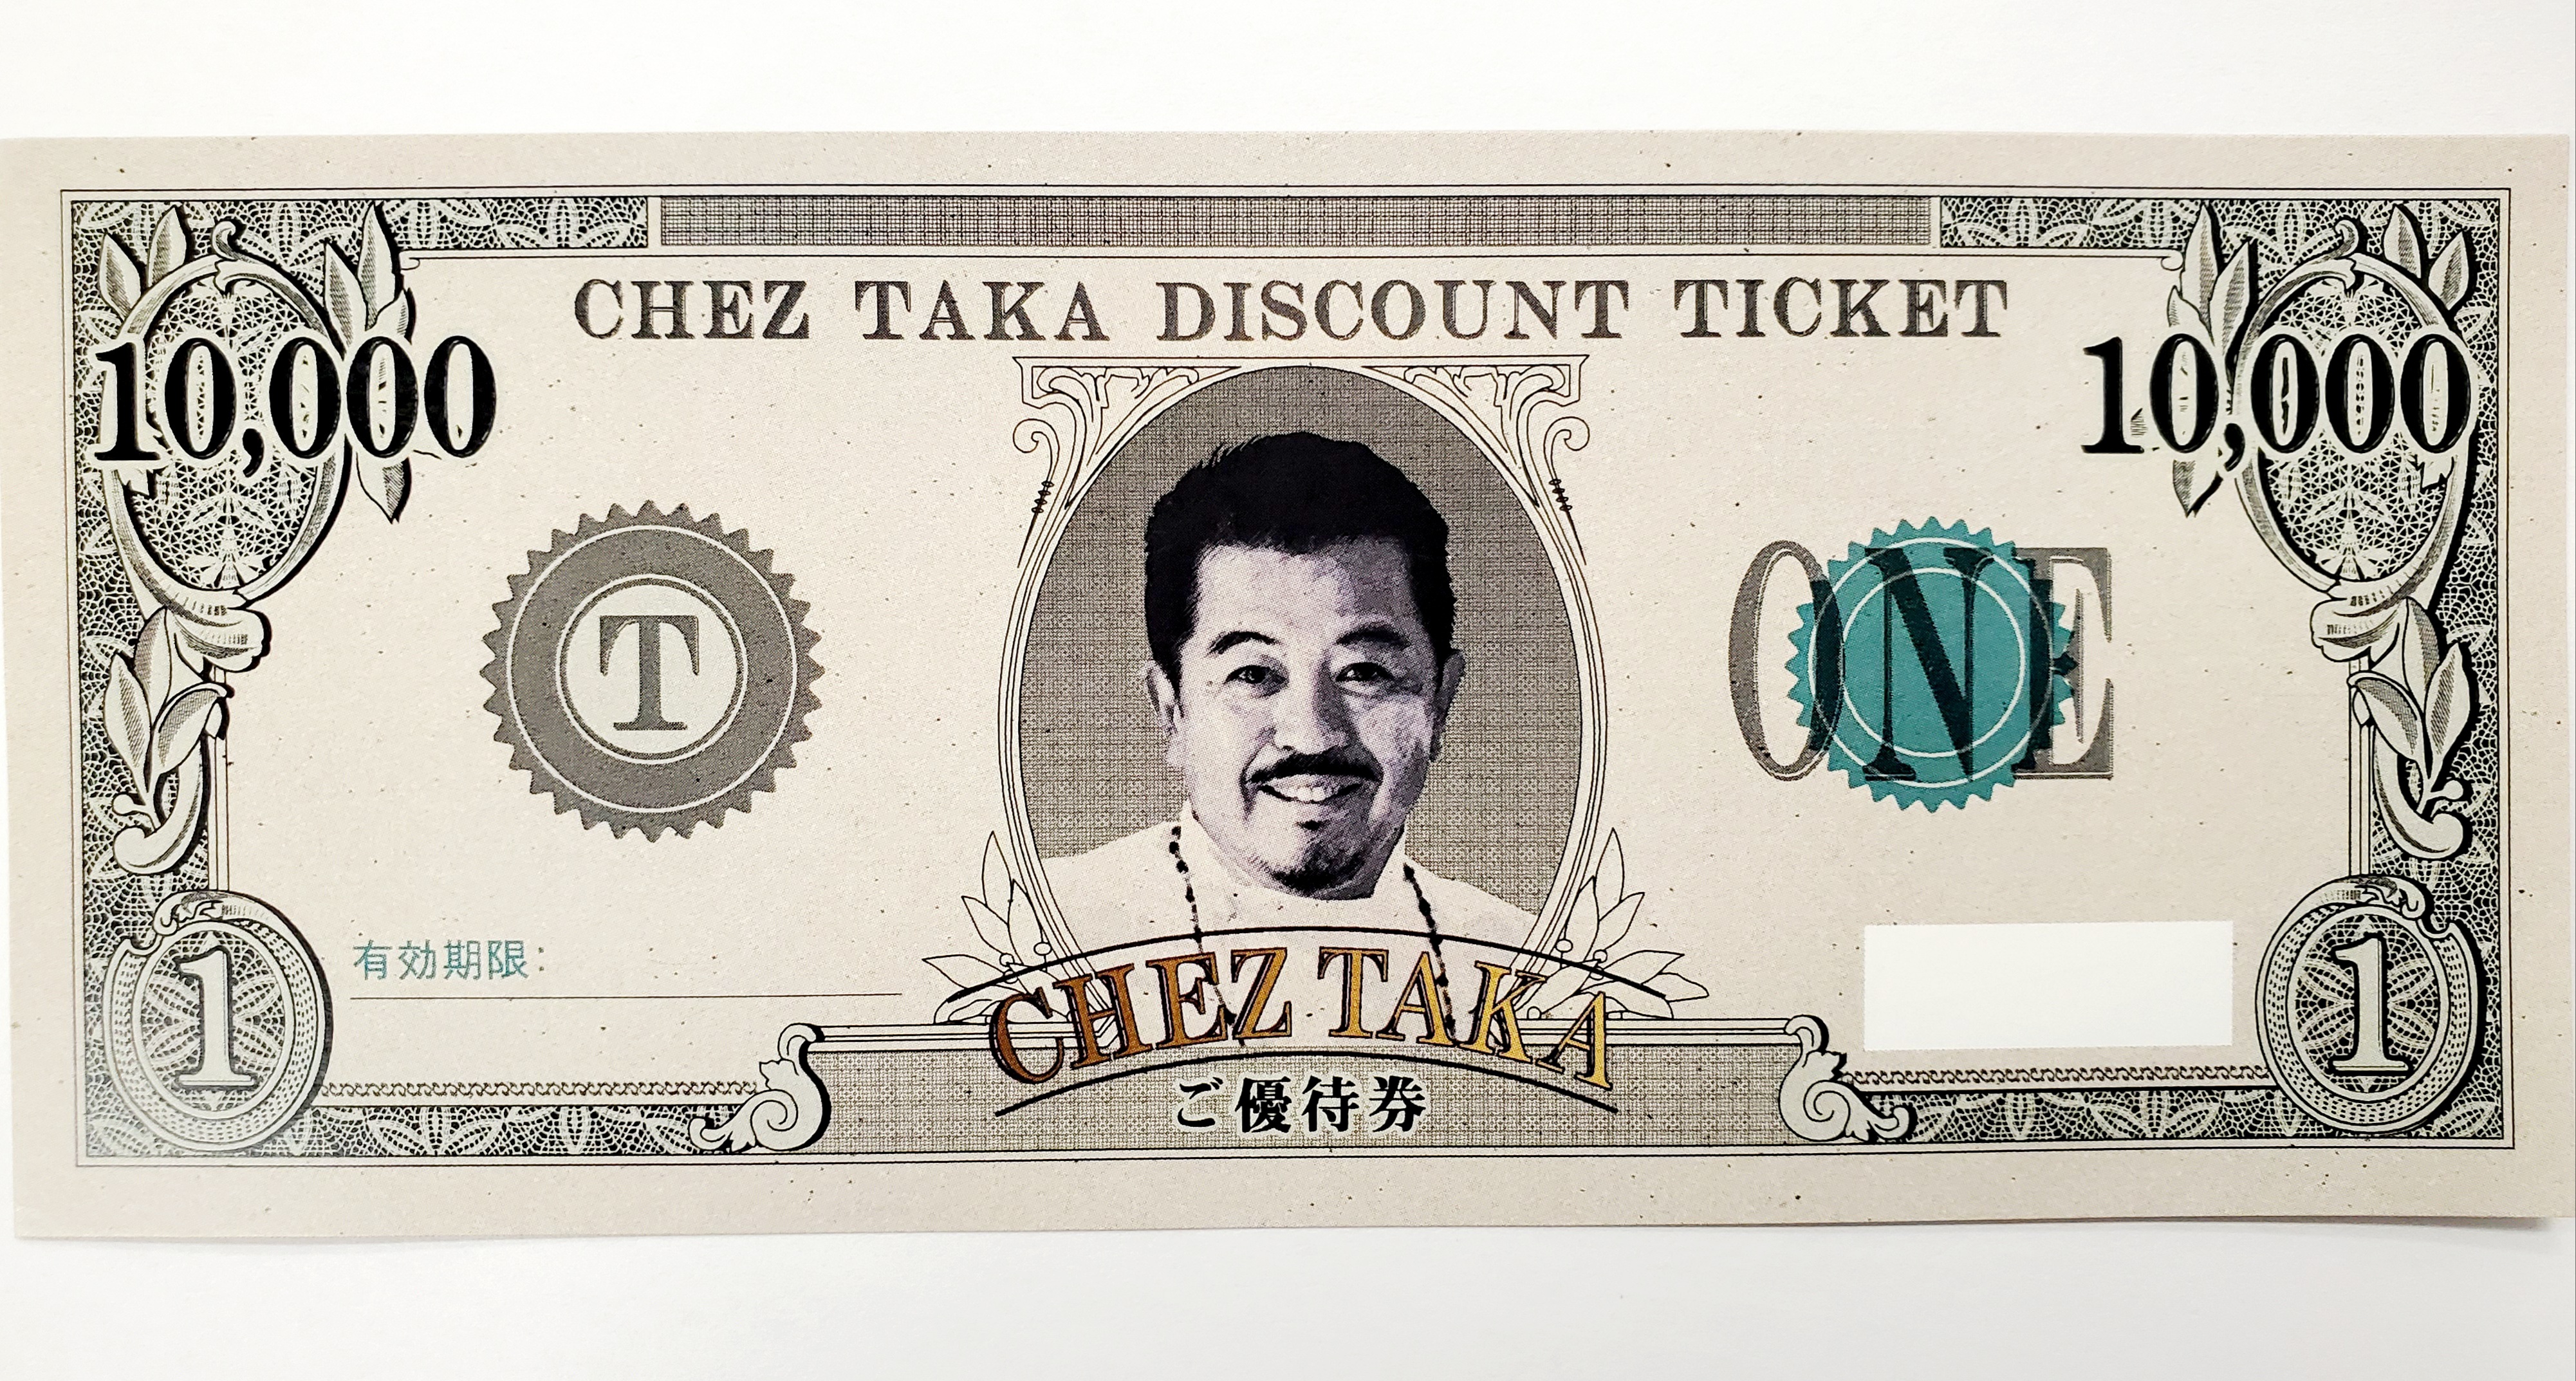 1万円チケット